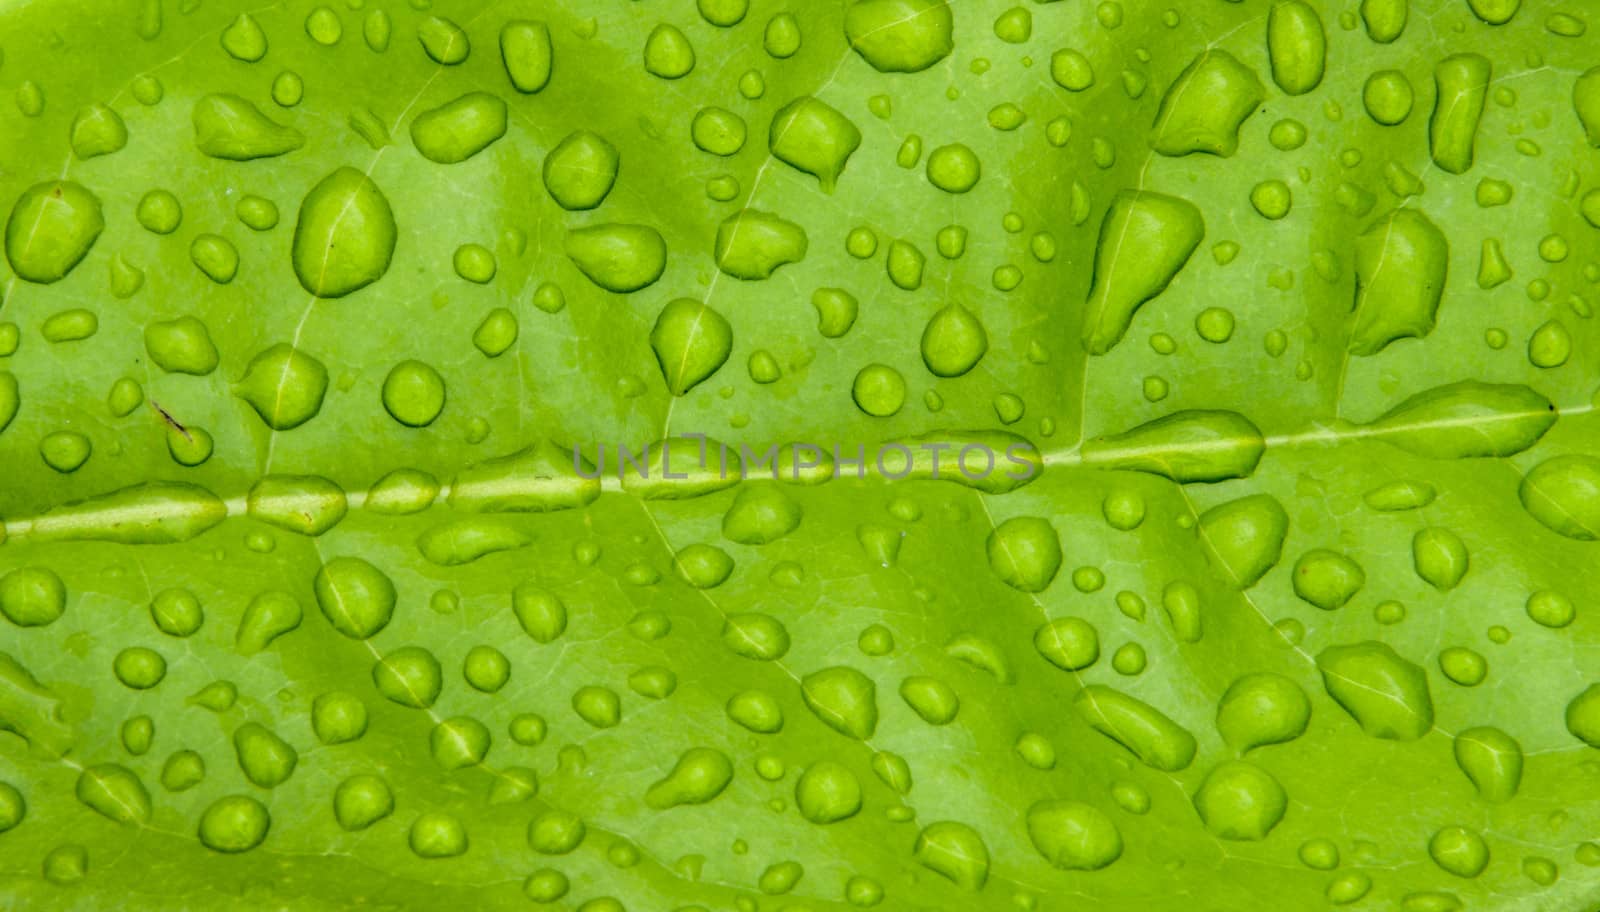 Water drop on leaf by gjeerawut